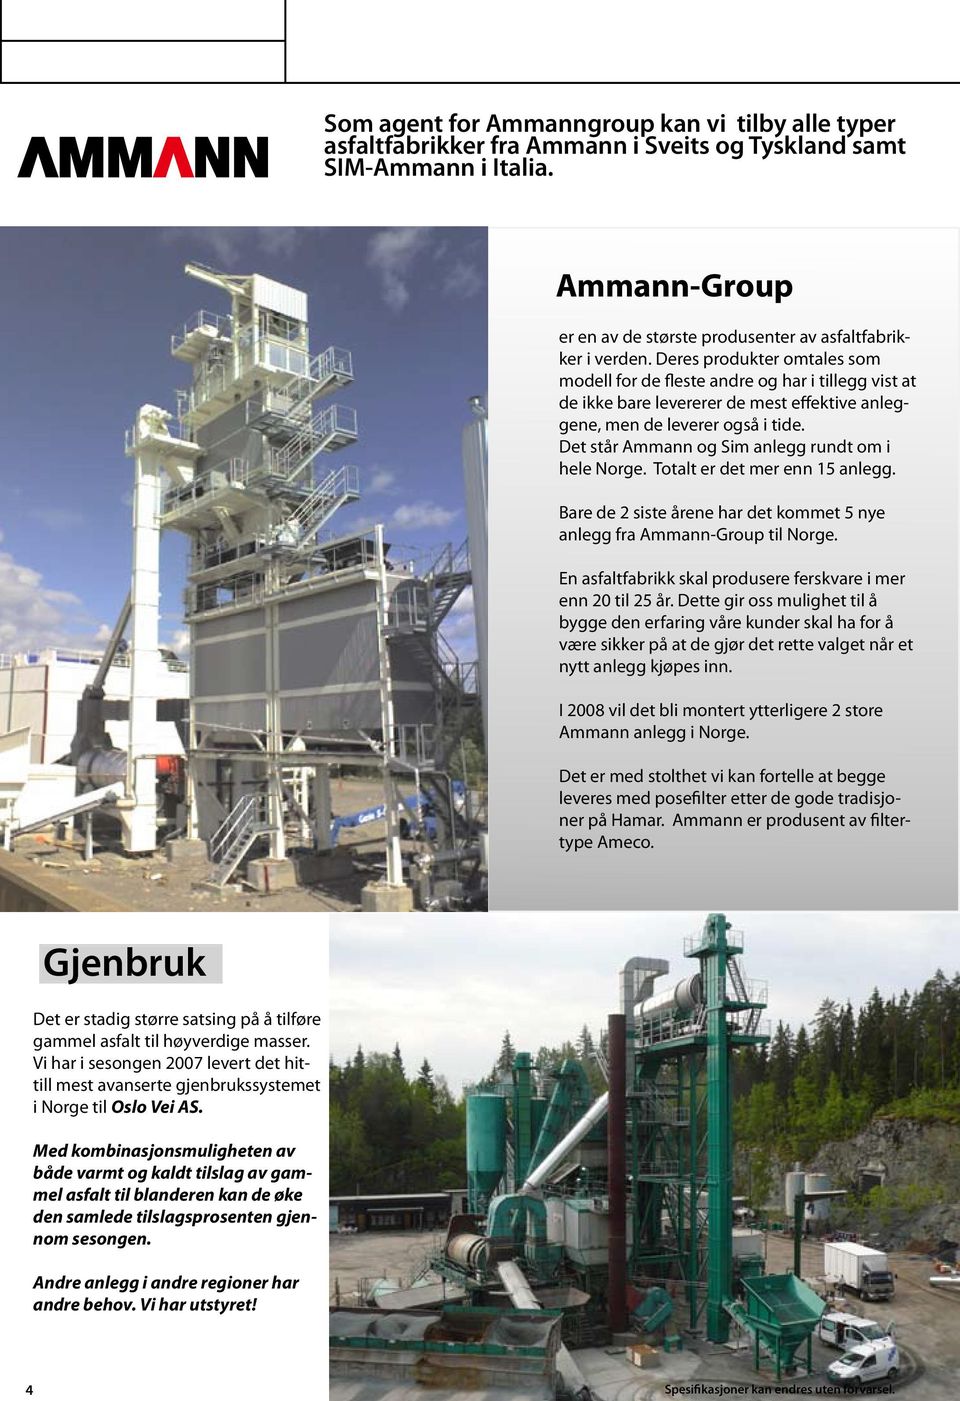 Det står Ammann og Sim anlegg rundt om i hele Norge. Totalt er det mer enn 15 anlegg. Bare de 2 siste årene har det kommet 5 nye anlegg fra Ammann-Group til Norge.